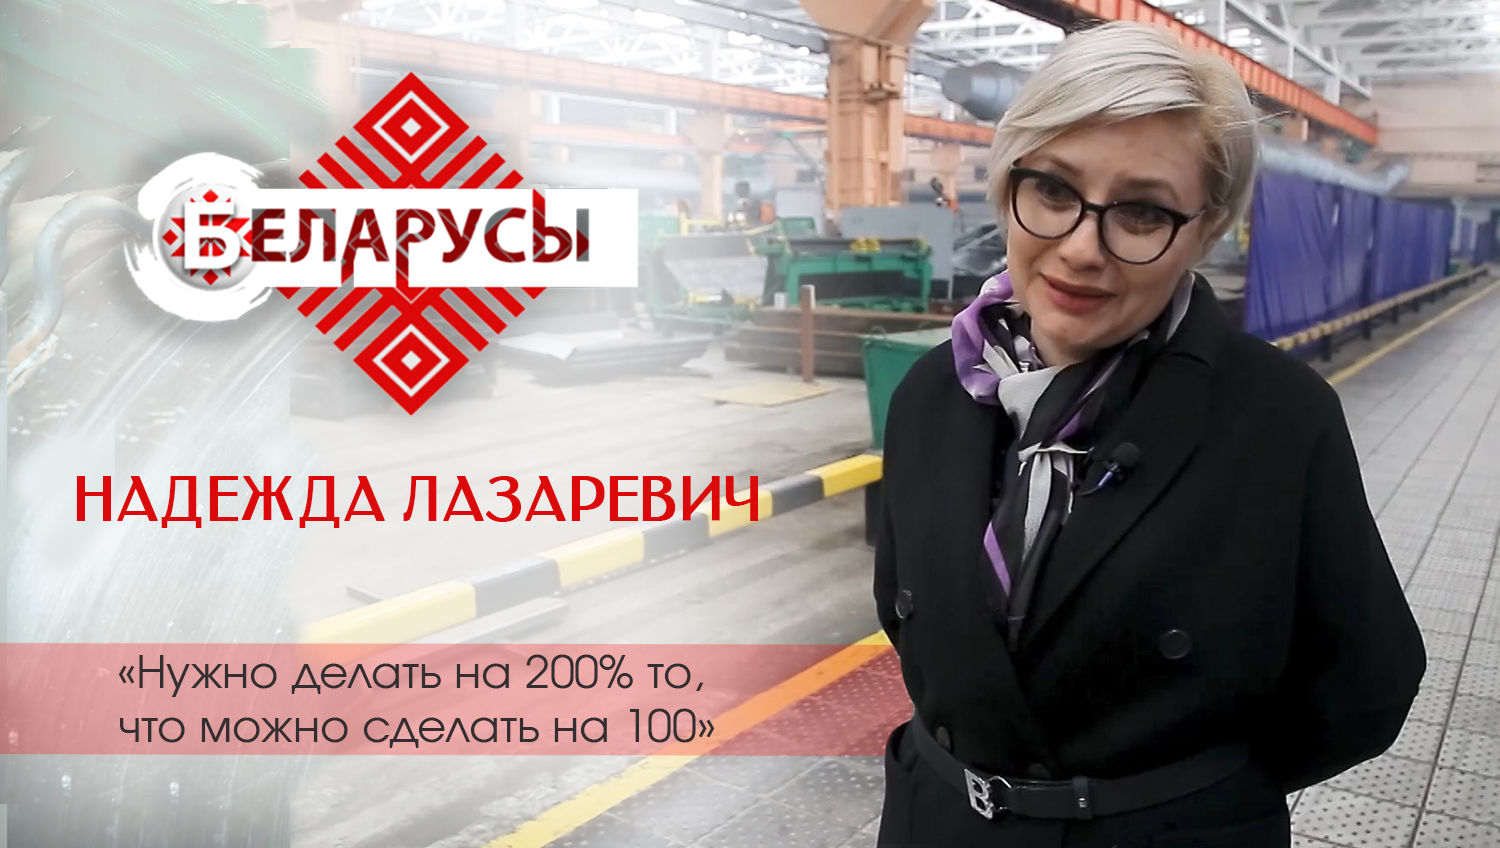 Первая женщина в Беларуси, возглавляющая промышленный холдинг о балансе между семьёй и работой